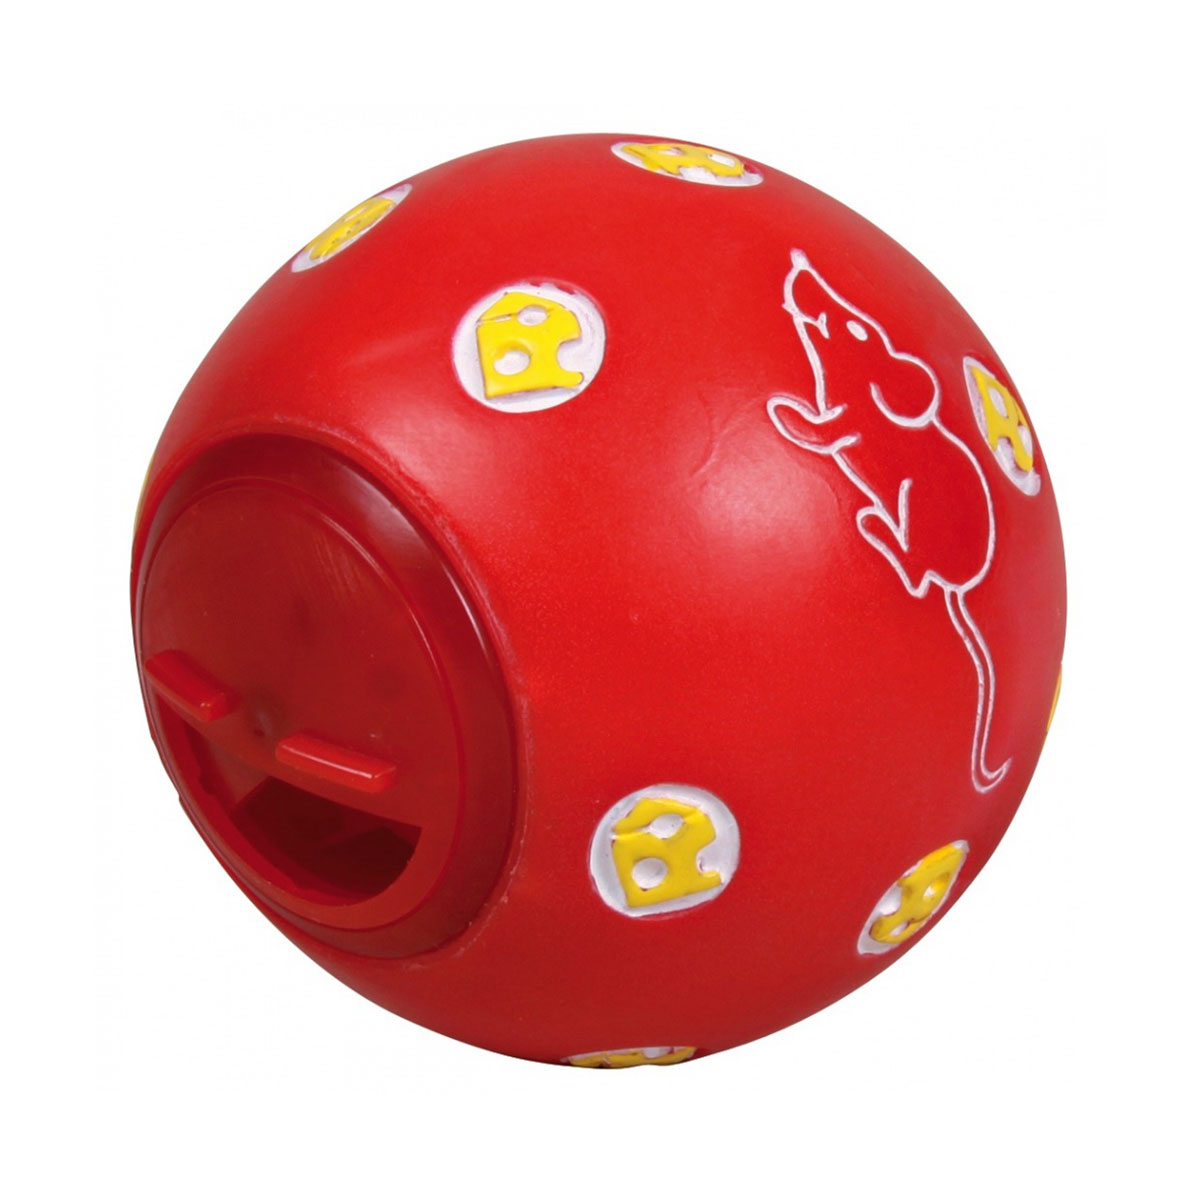 Игрушка мяч для кошек. Игрушка д/собак Trixie мяч для лакомств ф11см 3490. Trixie игрушка мяч для лакомства 5,5см. Trixie мяч для лакомств д/кошек,7,5см. Trixie игрушка для собак мяч для лакомства ф 11см.